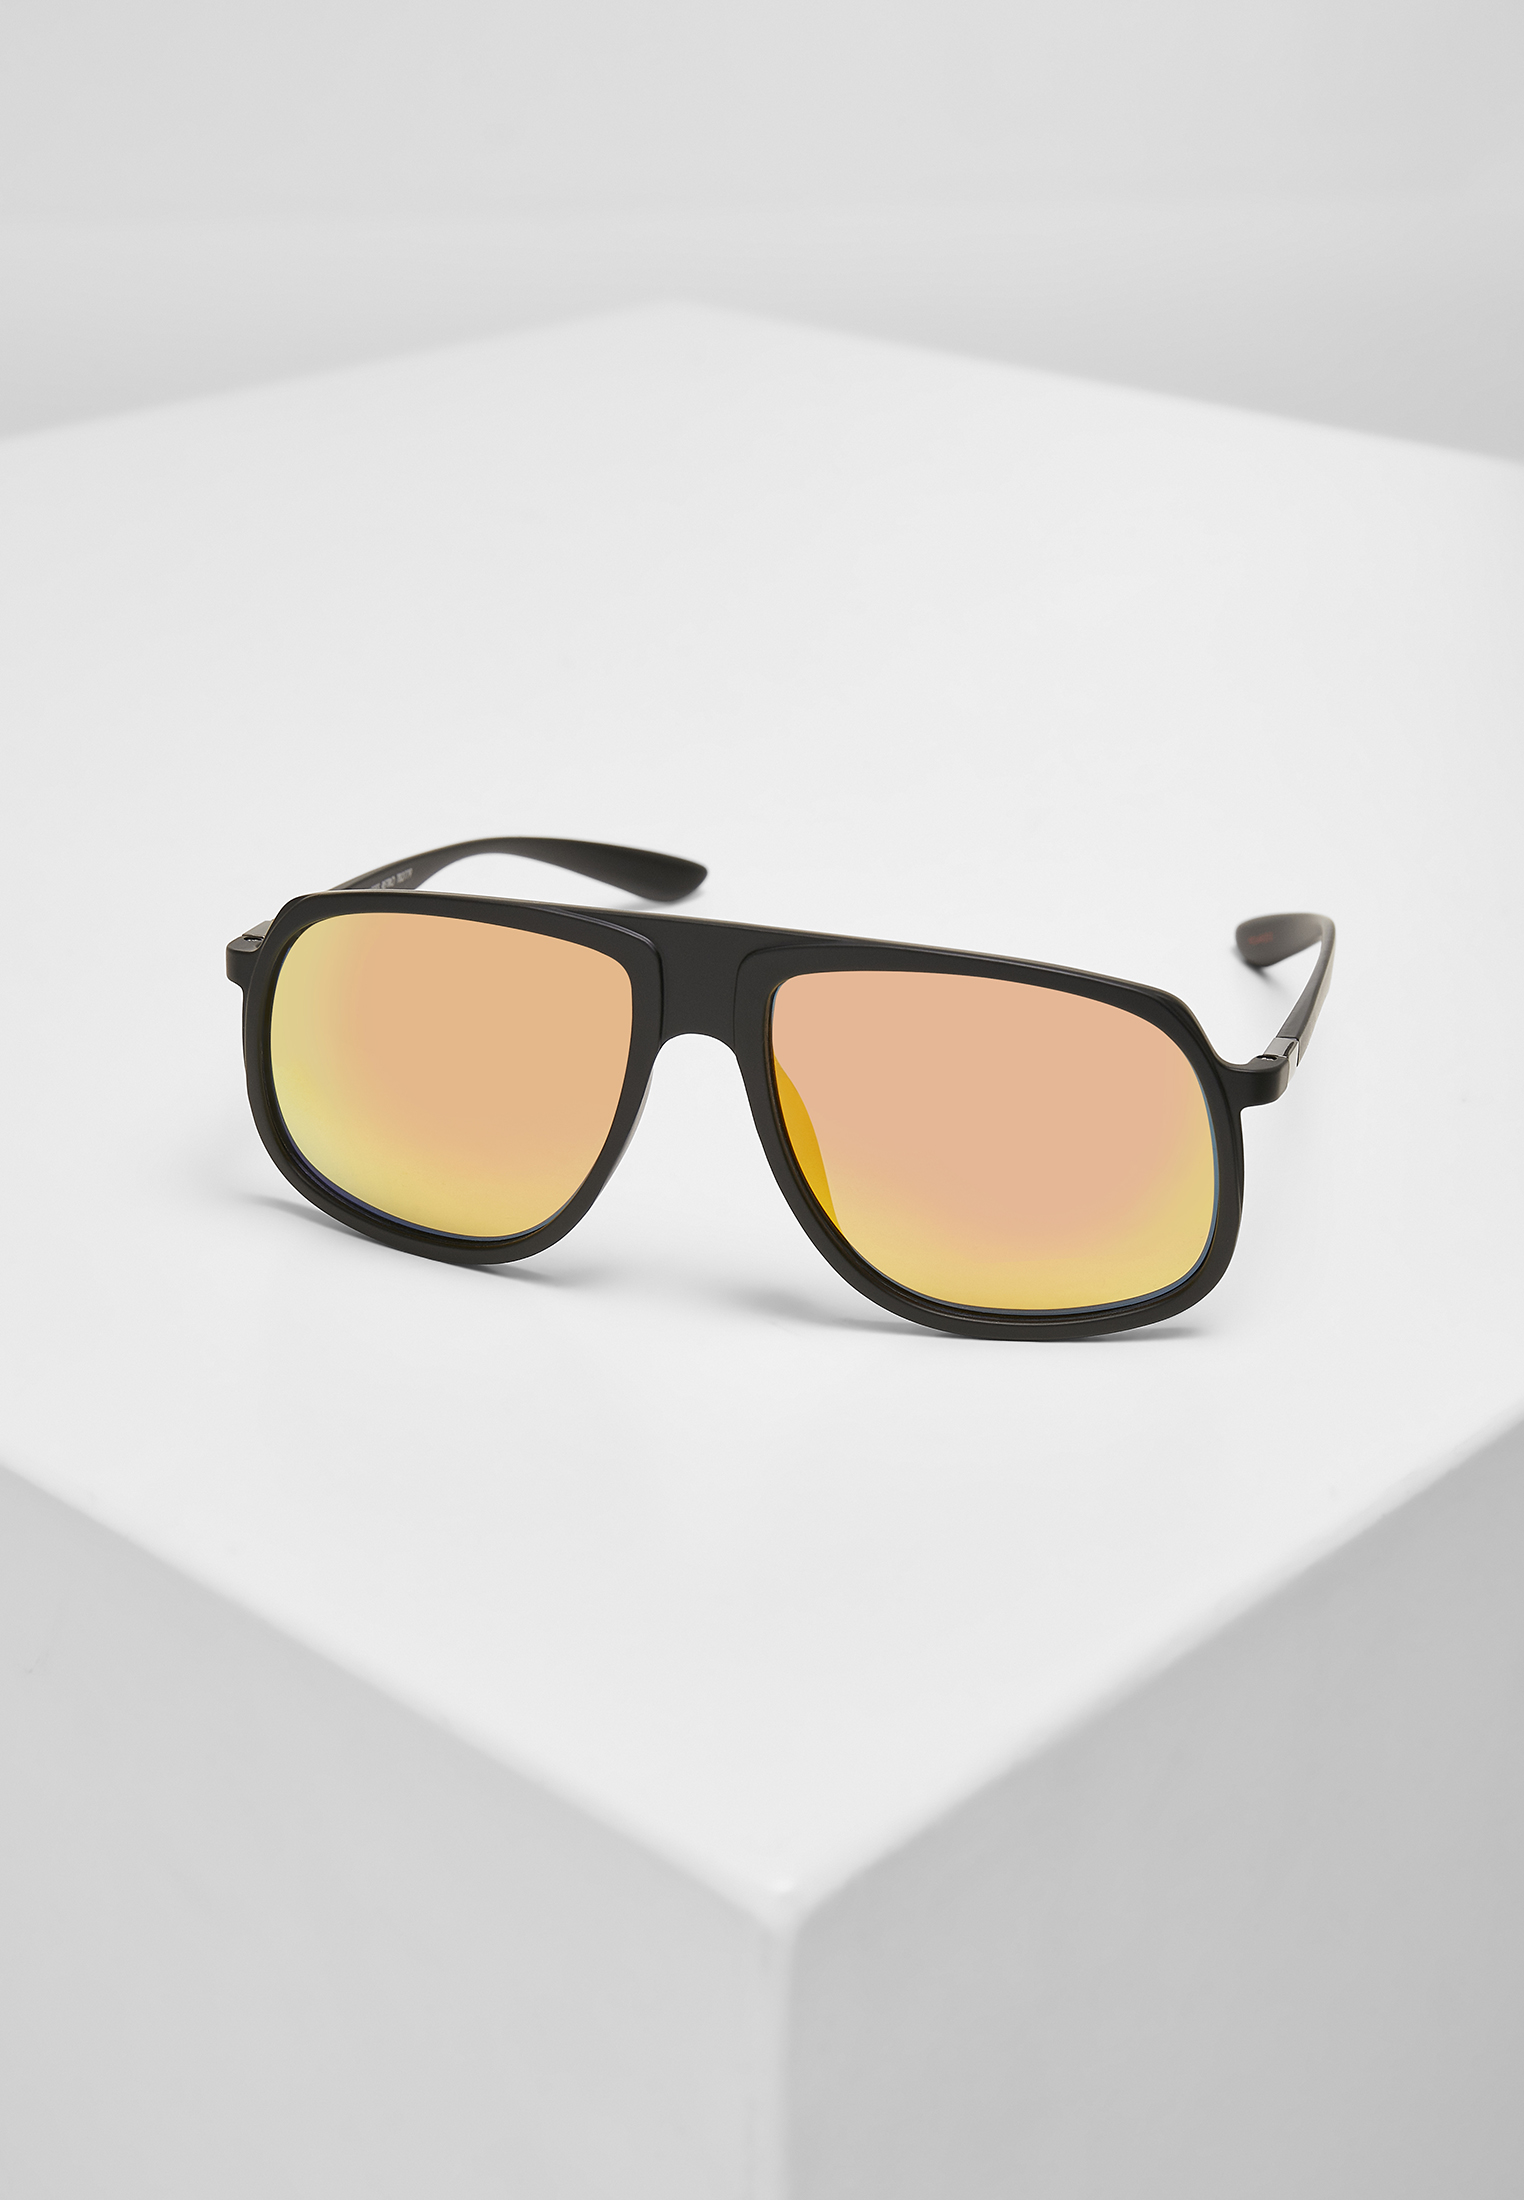 Sonnenbrillen 107 Chain Sunglasses Retro in Farbe blk/yellow